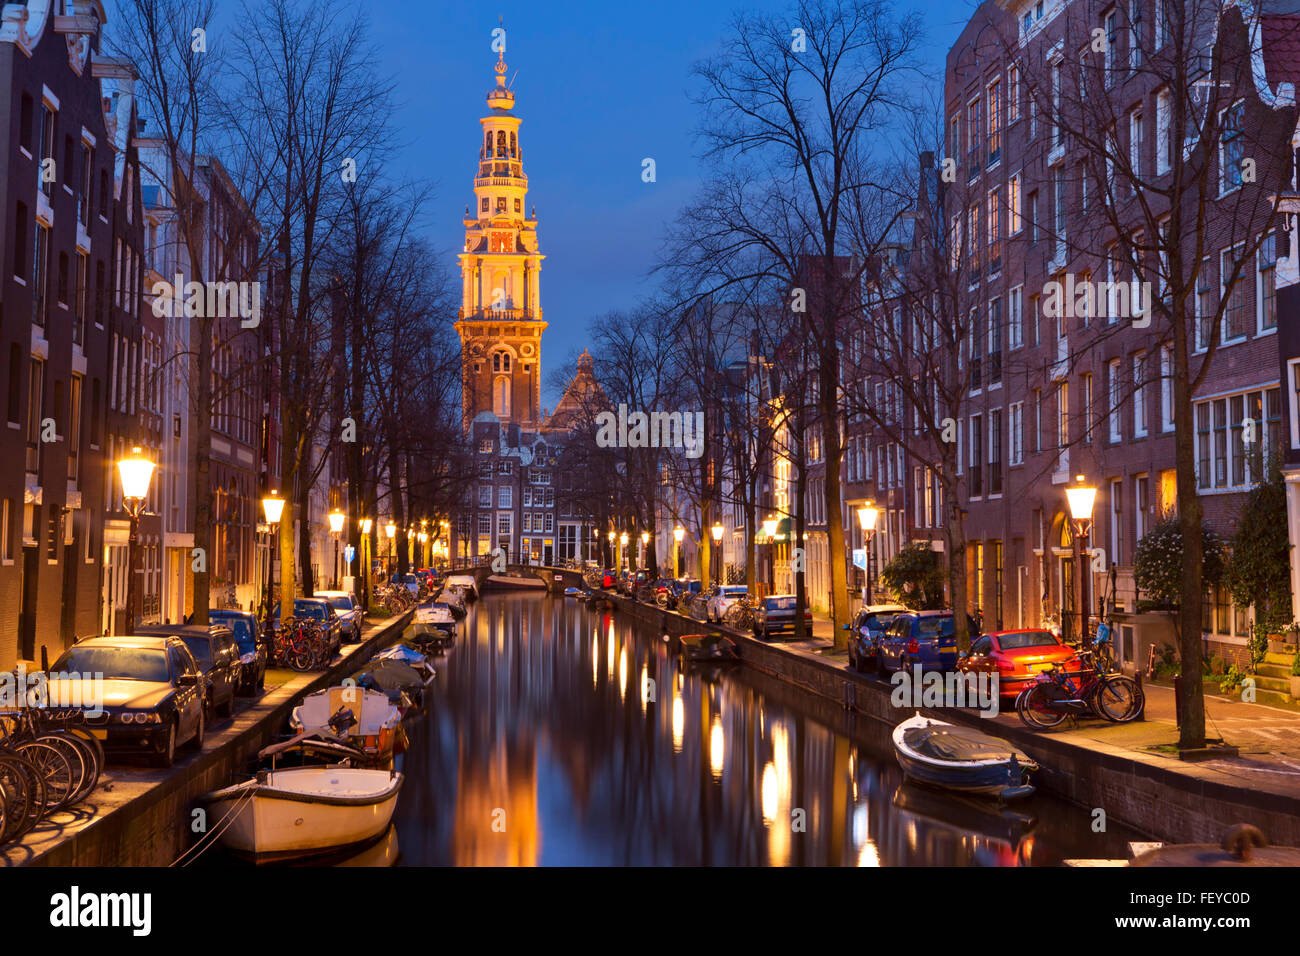 Torre di una chiesa alla fine di un canale nella città di Amsterdam, Paesi Bassi durante la notte. Foto Stock